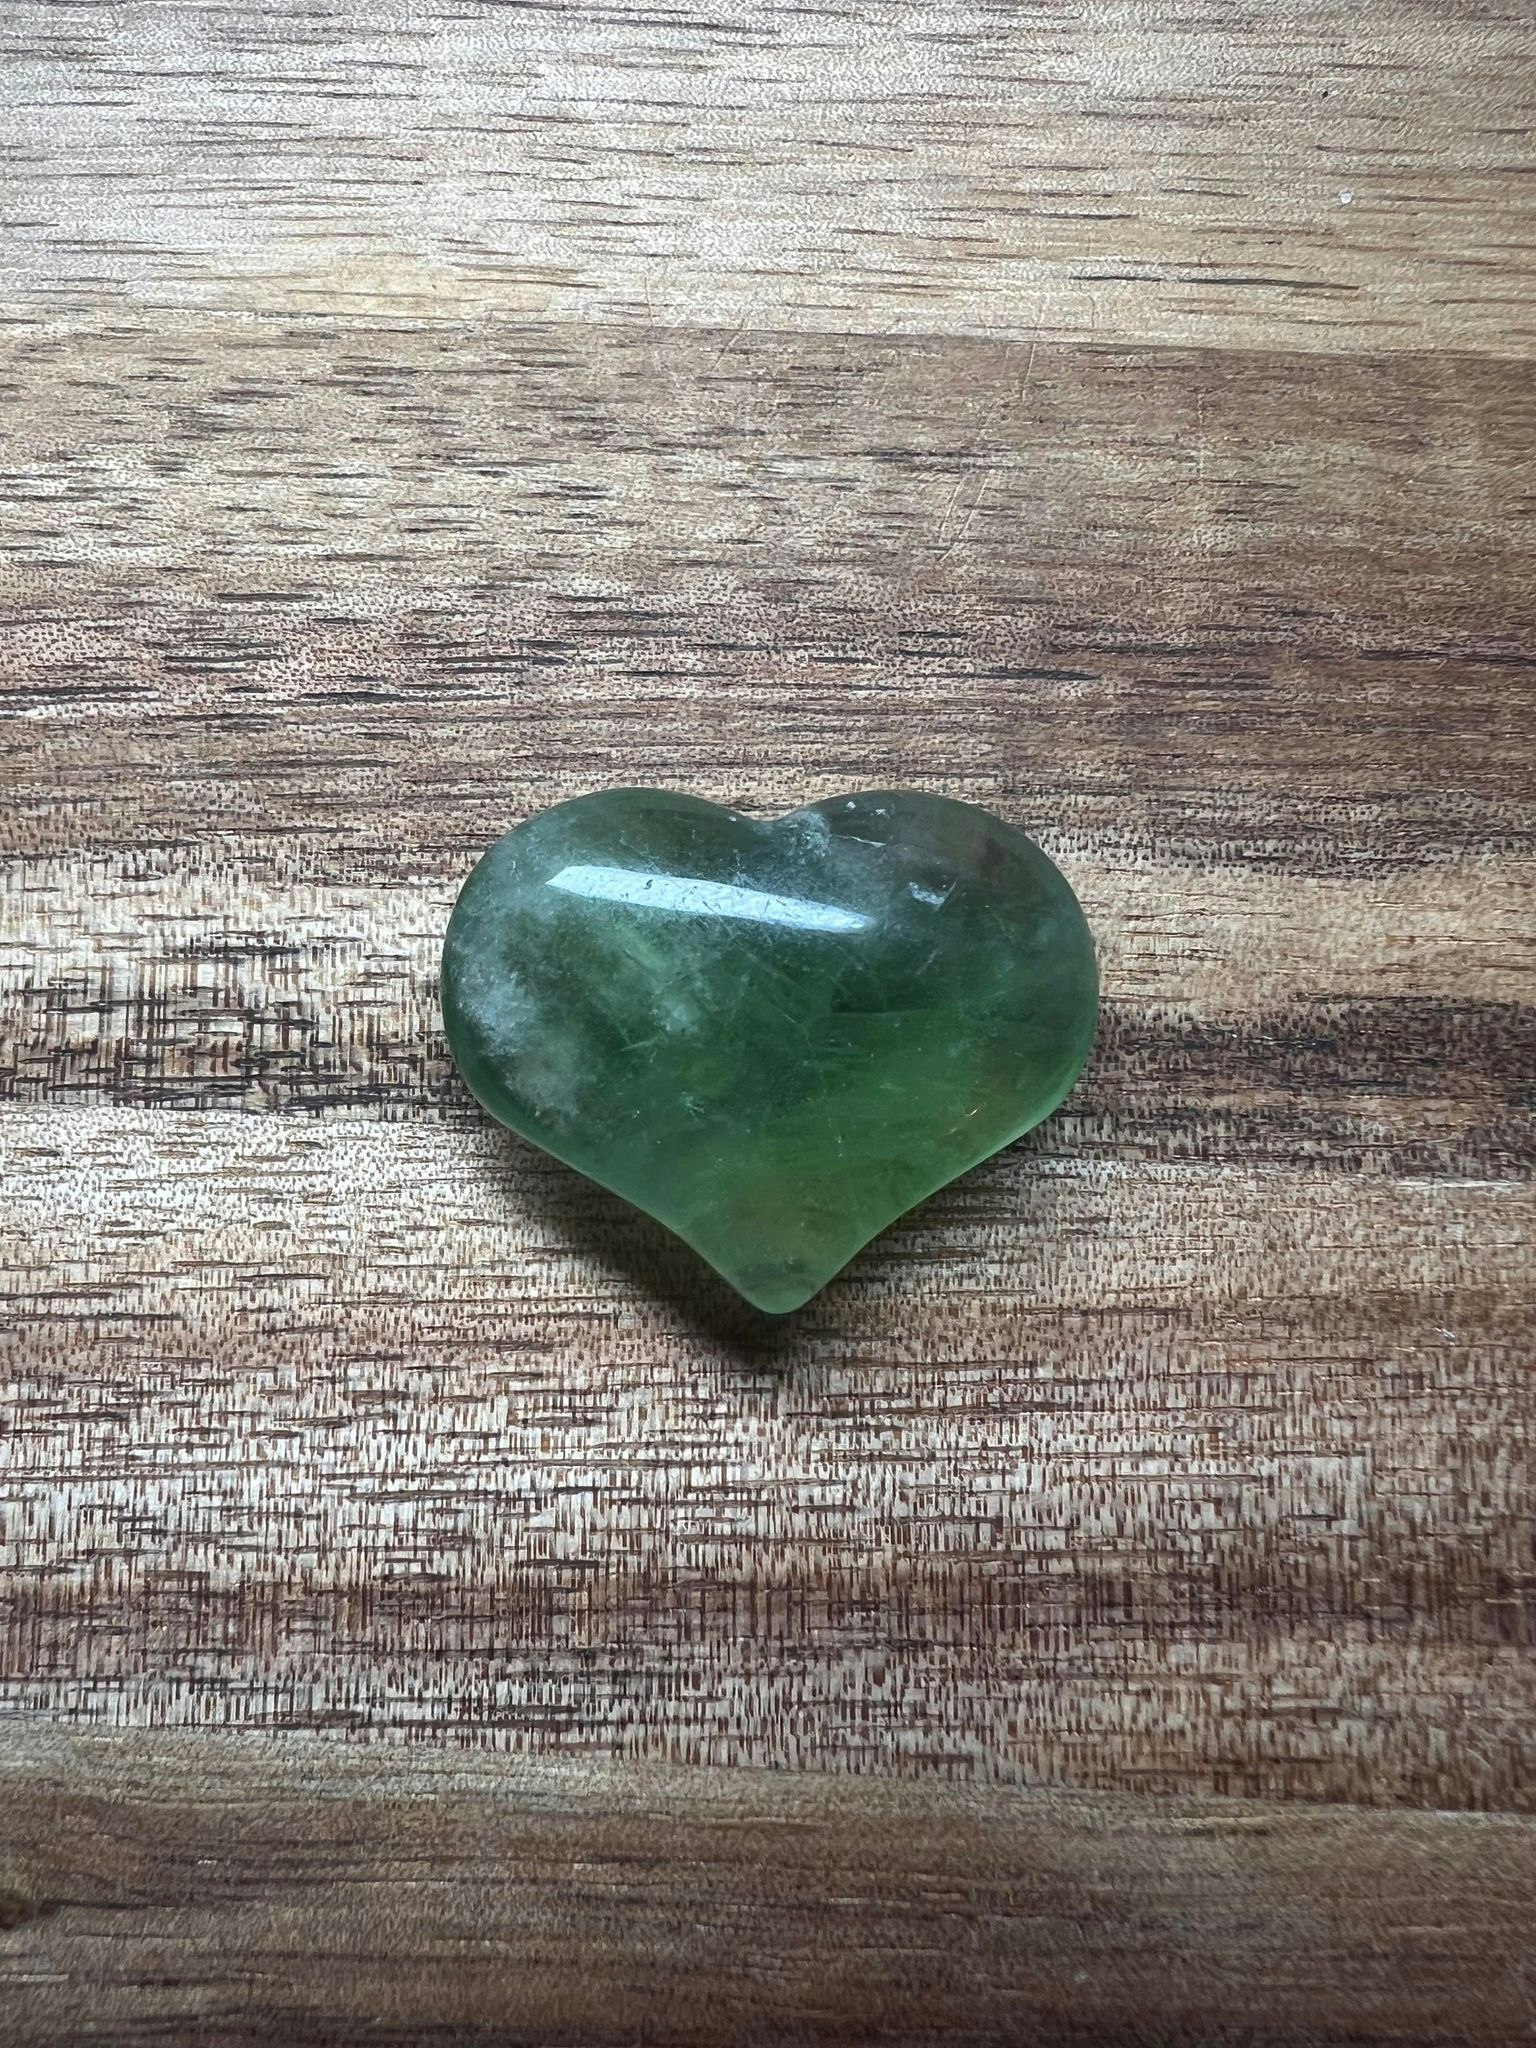 Fluorit Hjärtan liten (grön/regnsbågs)